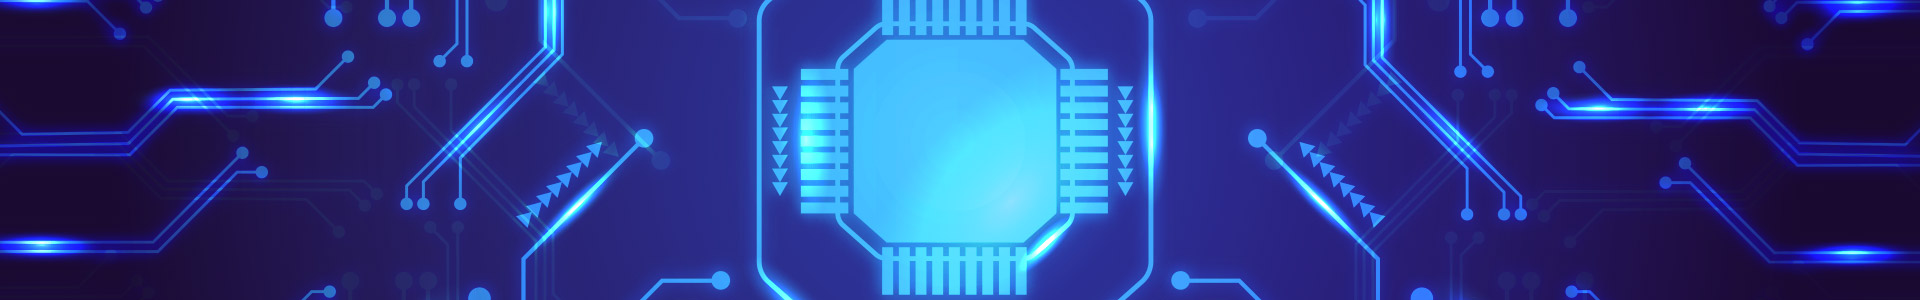 Digital Circuit Board Design